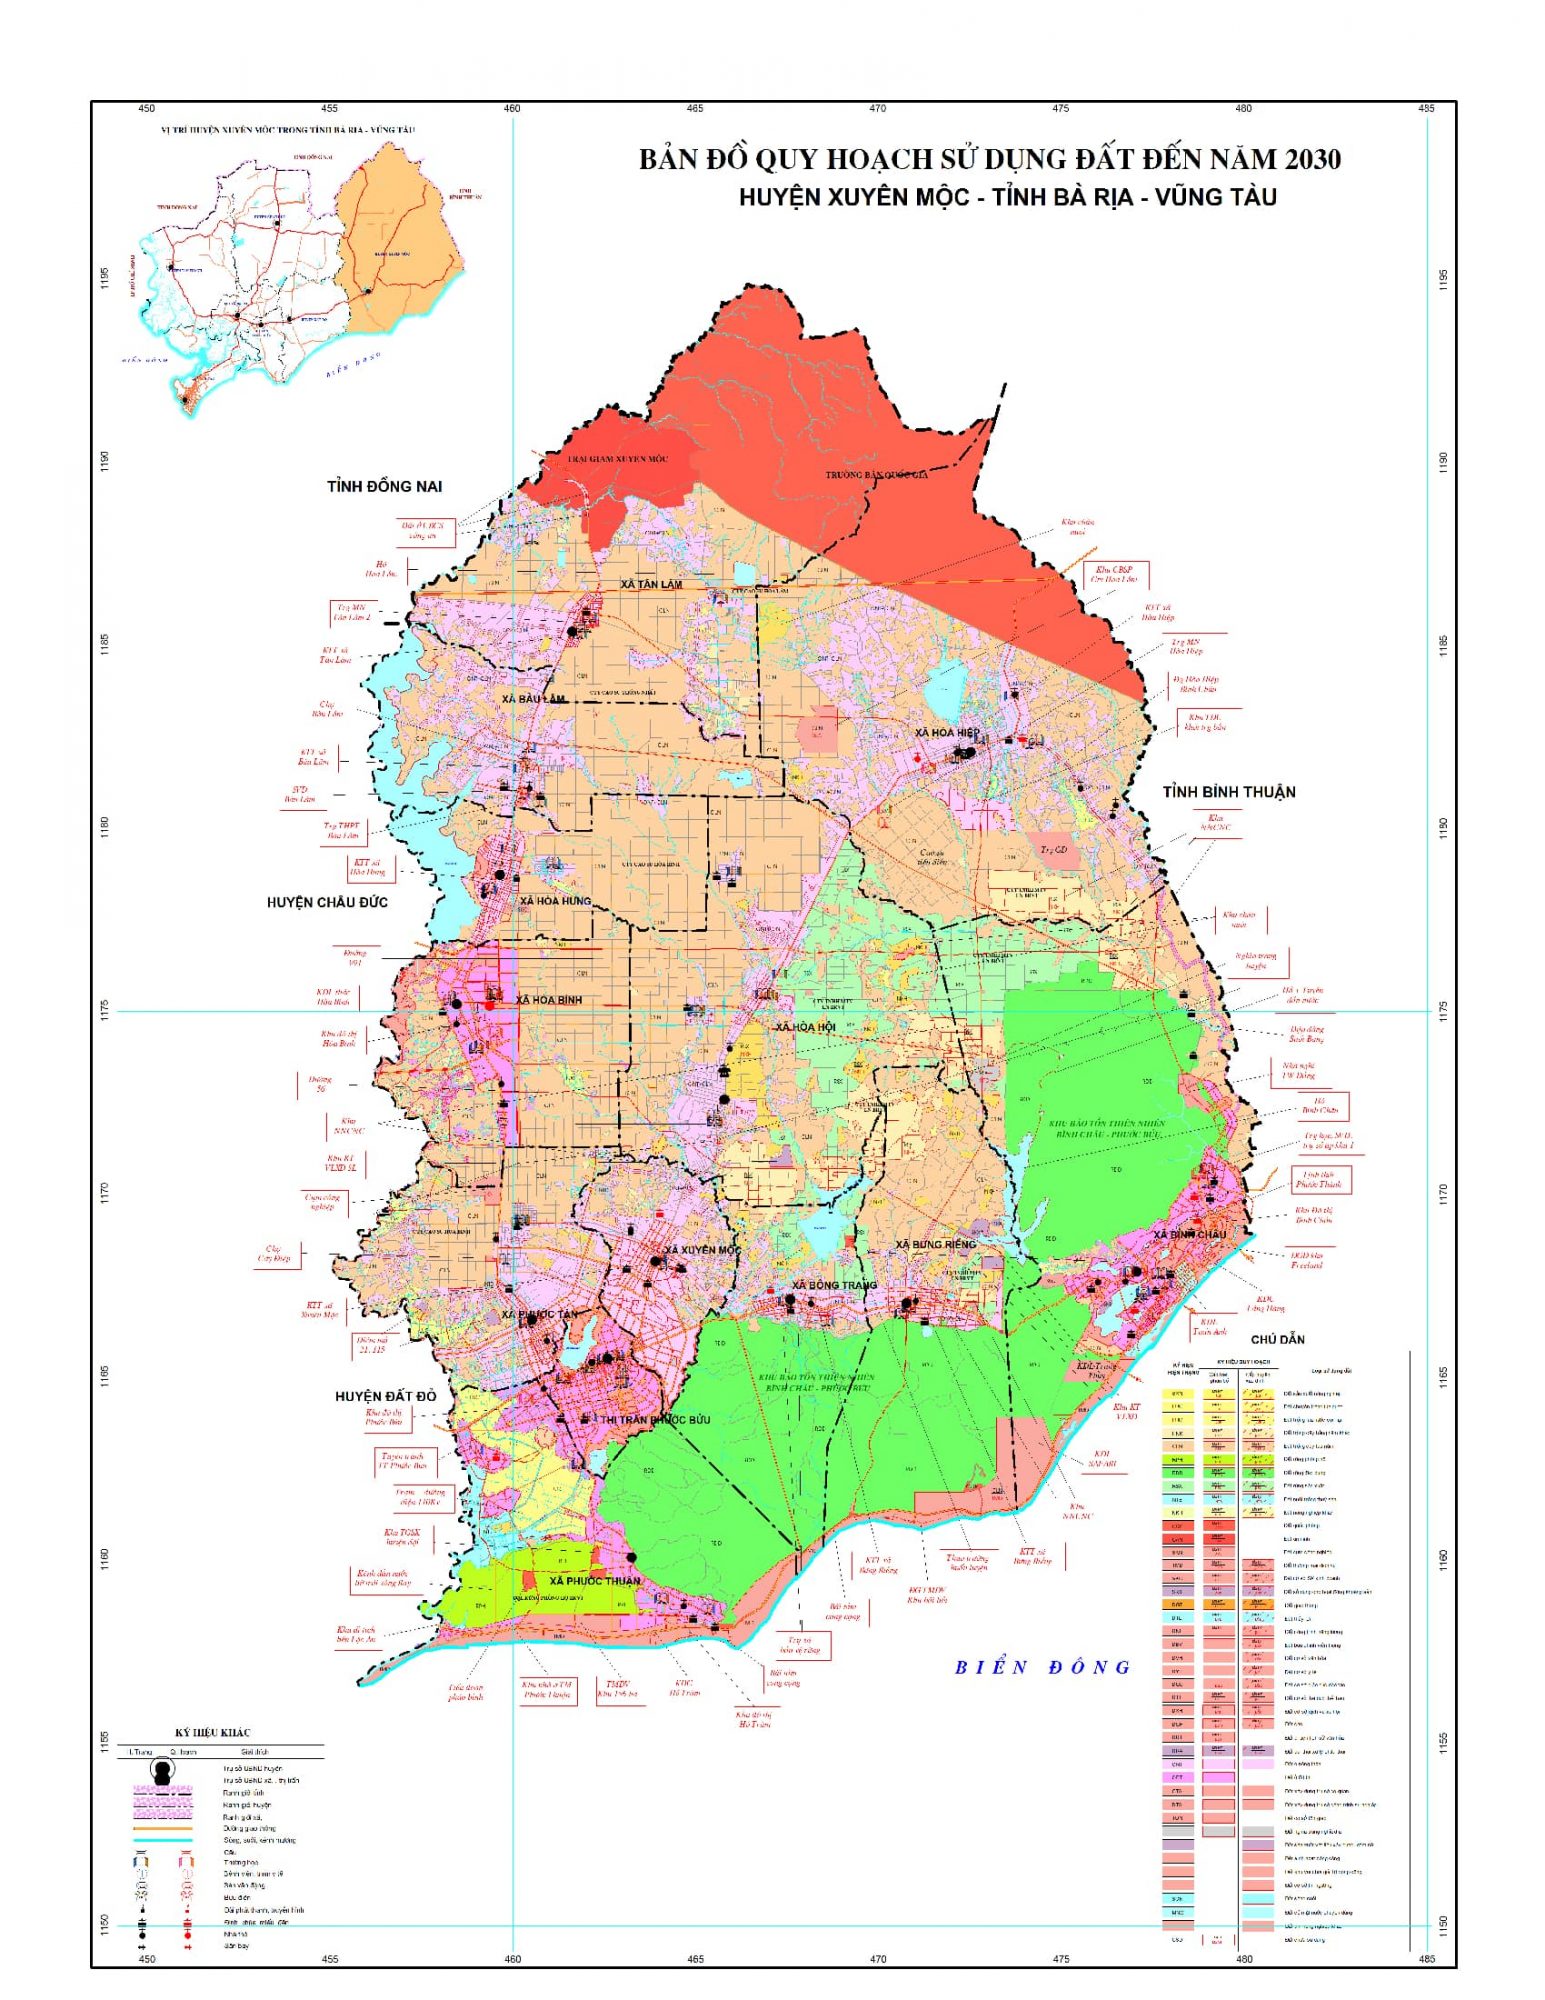 Bản đồ quy hoạch huyện Xuyên Mộc, tỉnh Bà Rịa - Vũng Tàu đến năm 2030